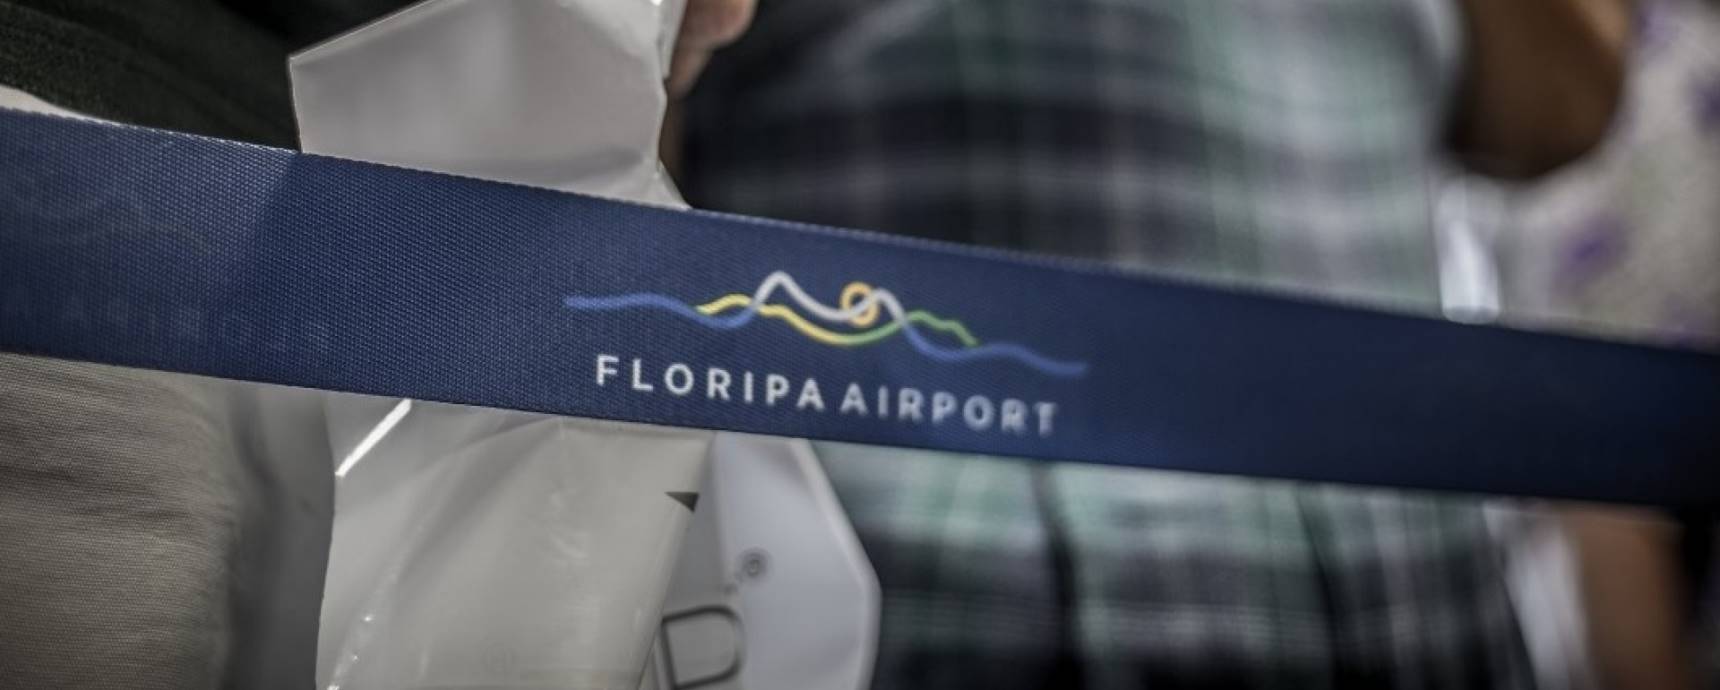 Combos de refeições e descontos que vão do souvenir às peças de grife: confira as promoções das lojas do Aeroporto de Florianópolis